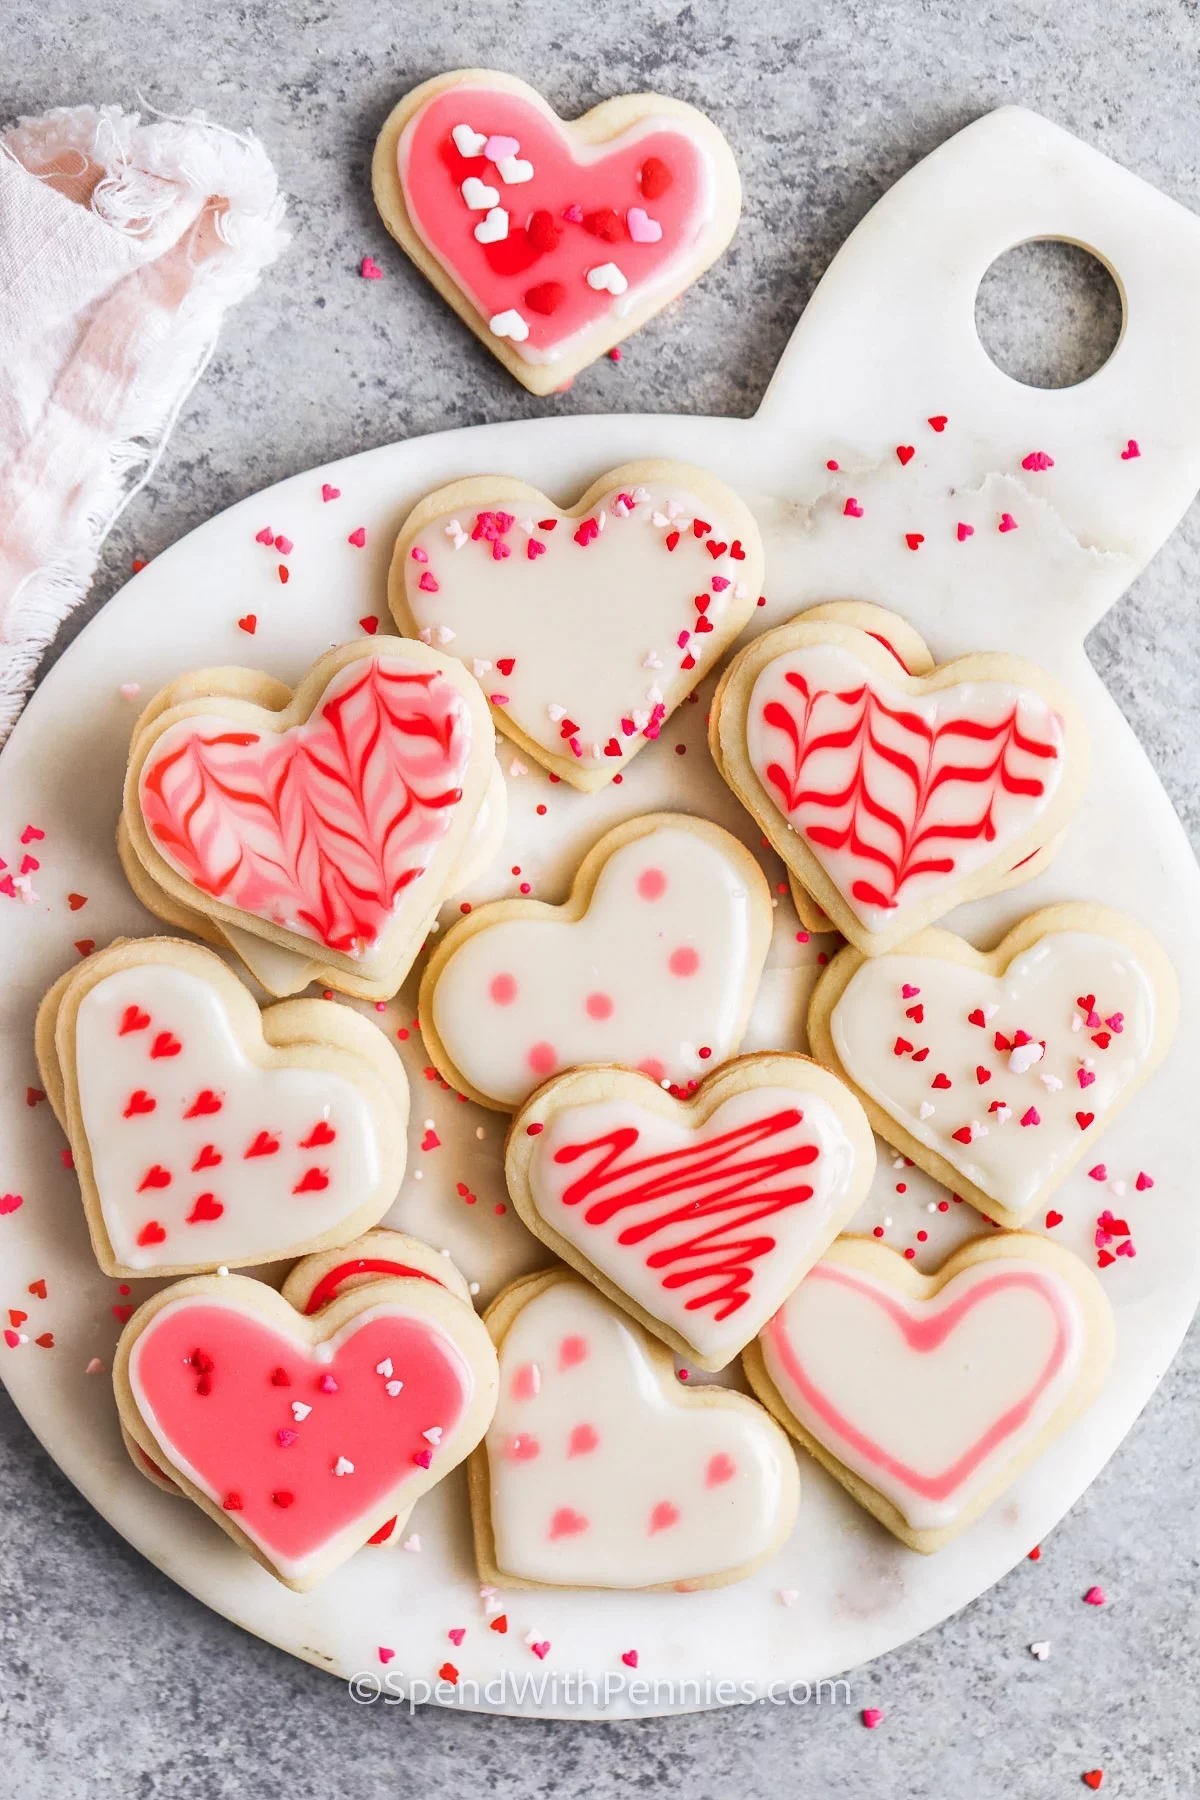 leckere valentinstag kekse mit zuckerglasur